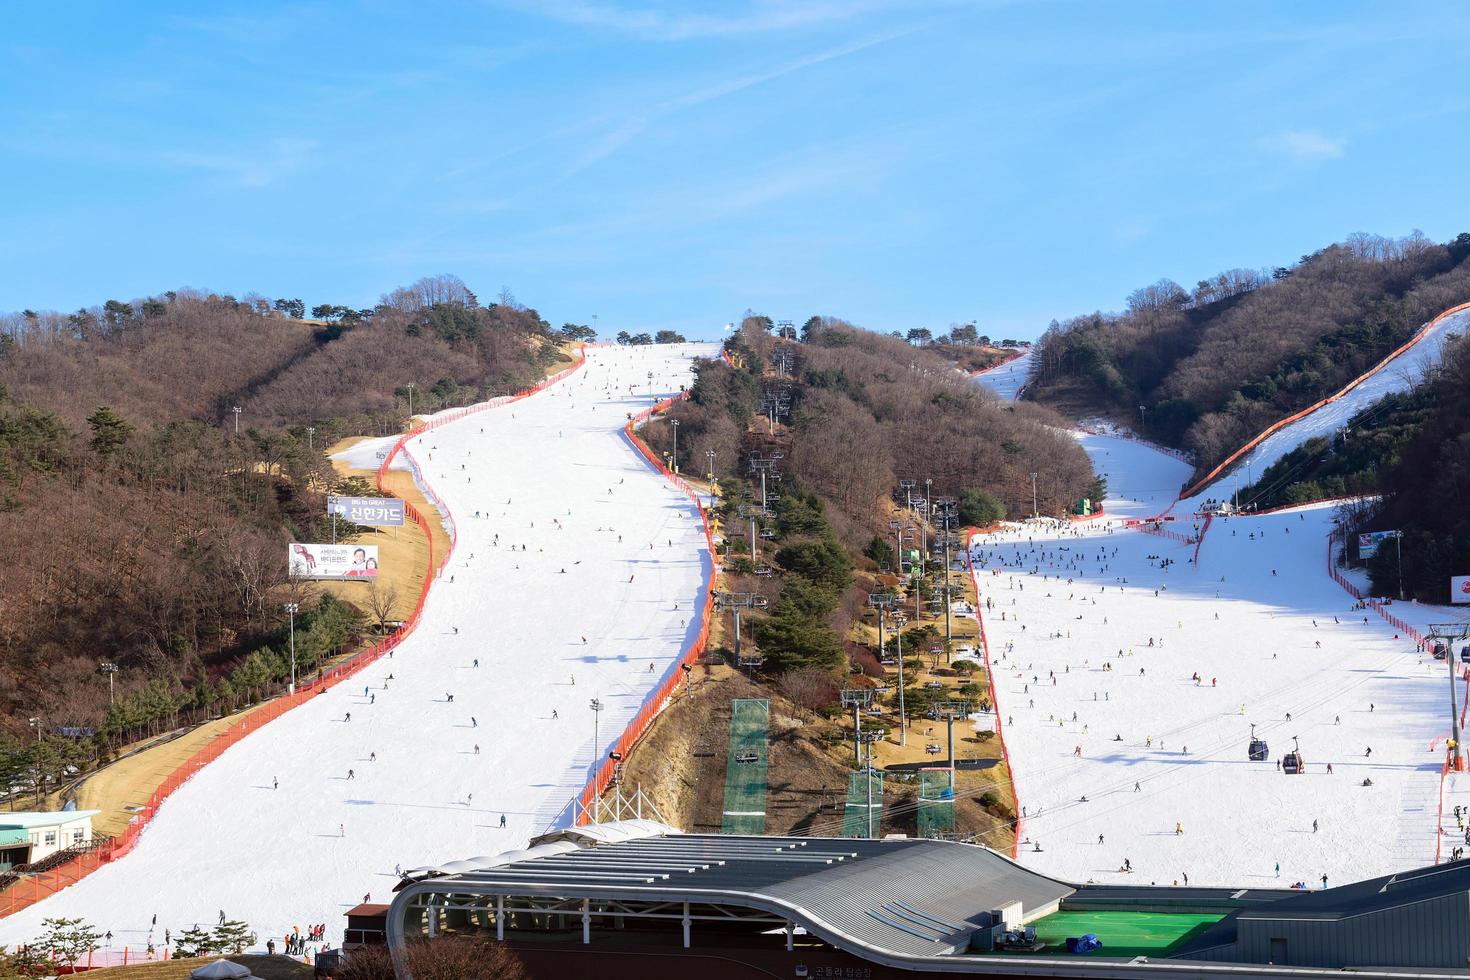 gangwon-do, corea, 4 gennaio 2016 - persone che sciano al parco daemyung vivaldi foto